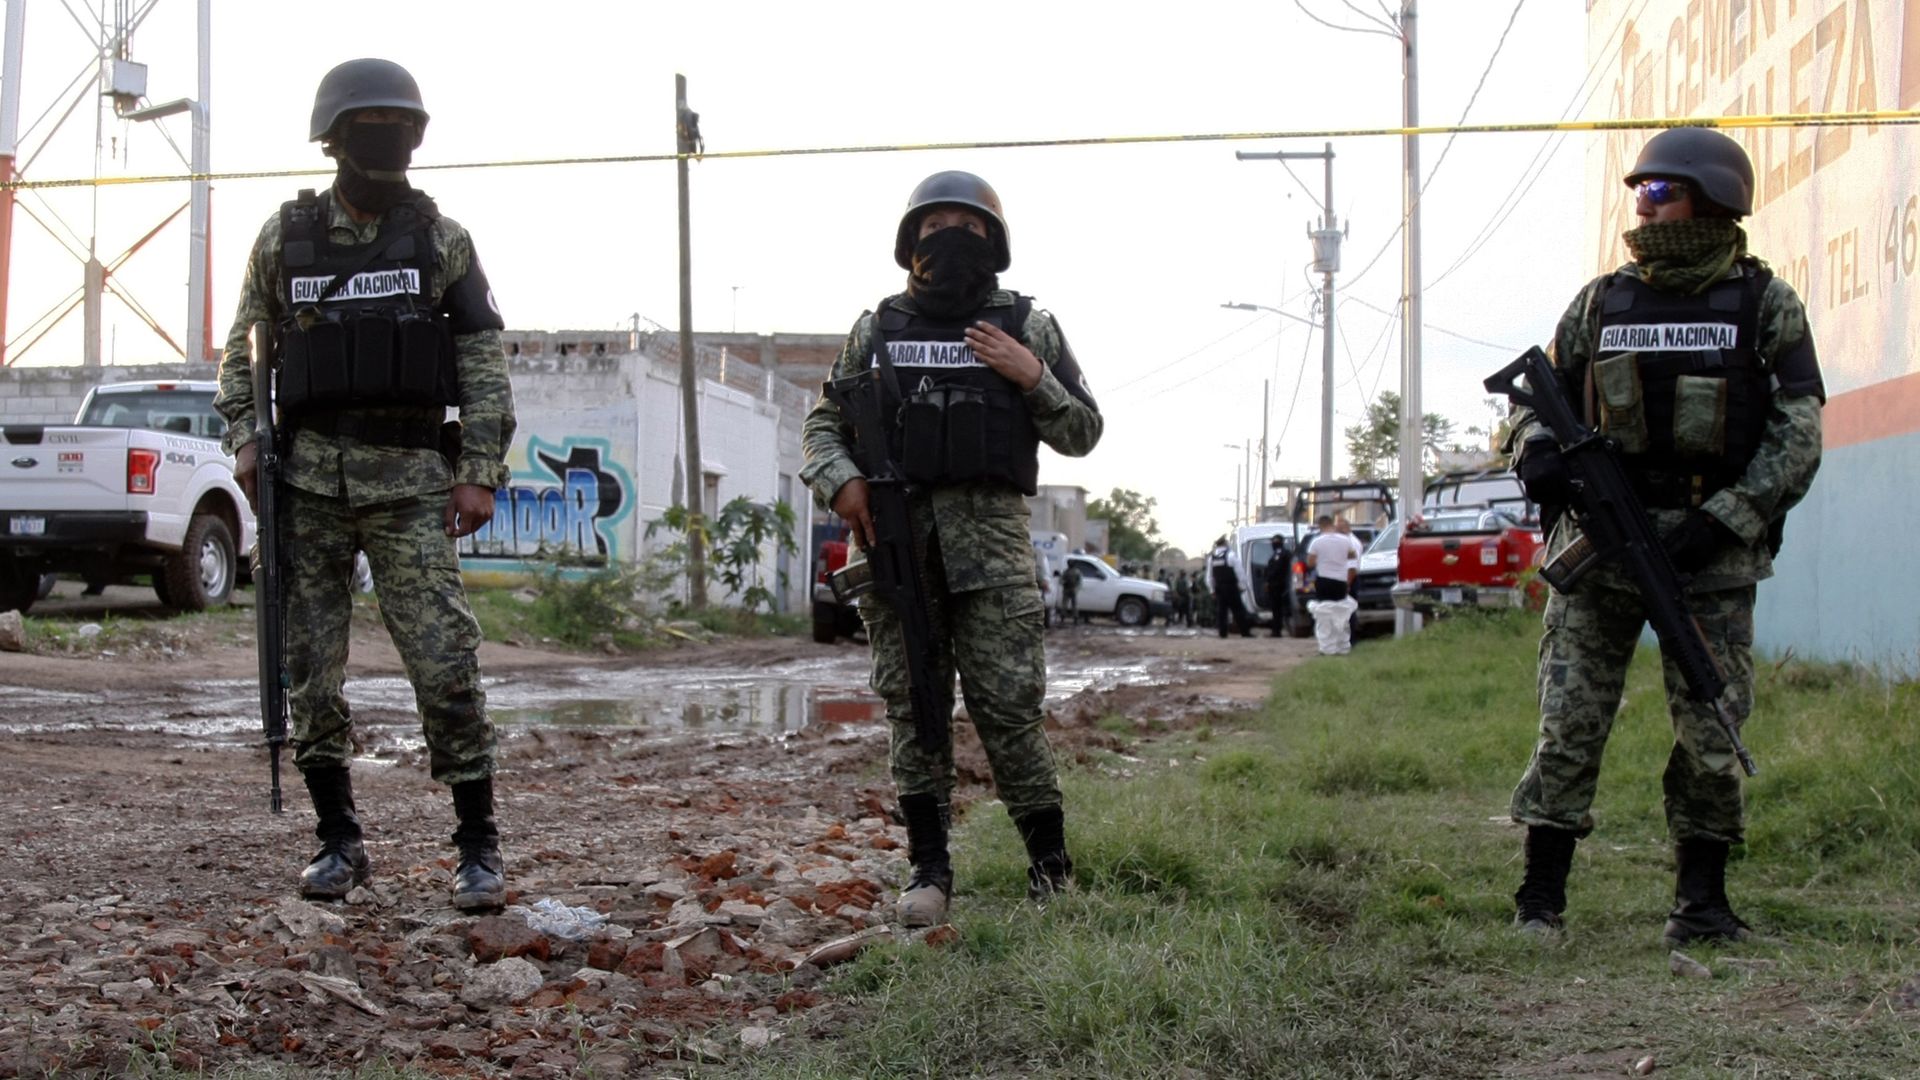 Two Mexican national guardsmen remain near the crime scene where 24 people were killed in Irapuato, Guanajuato state, Mexico.